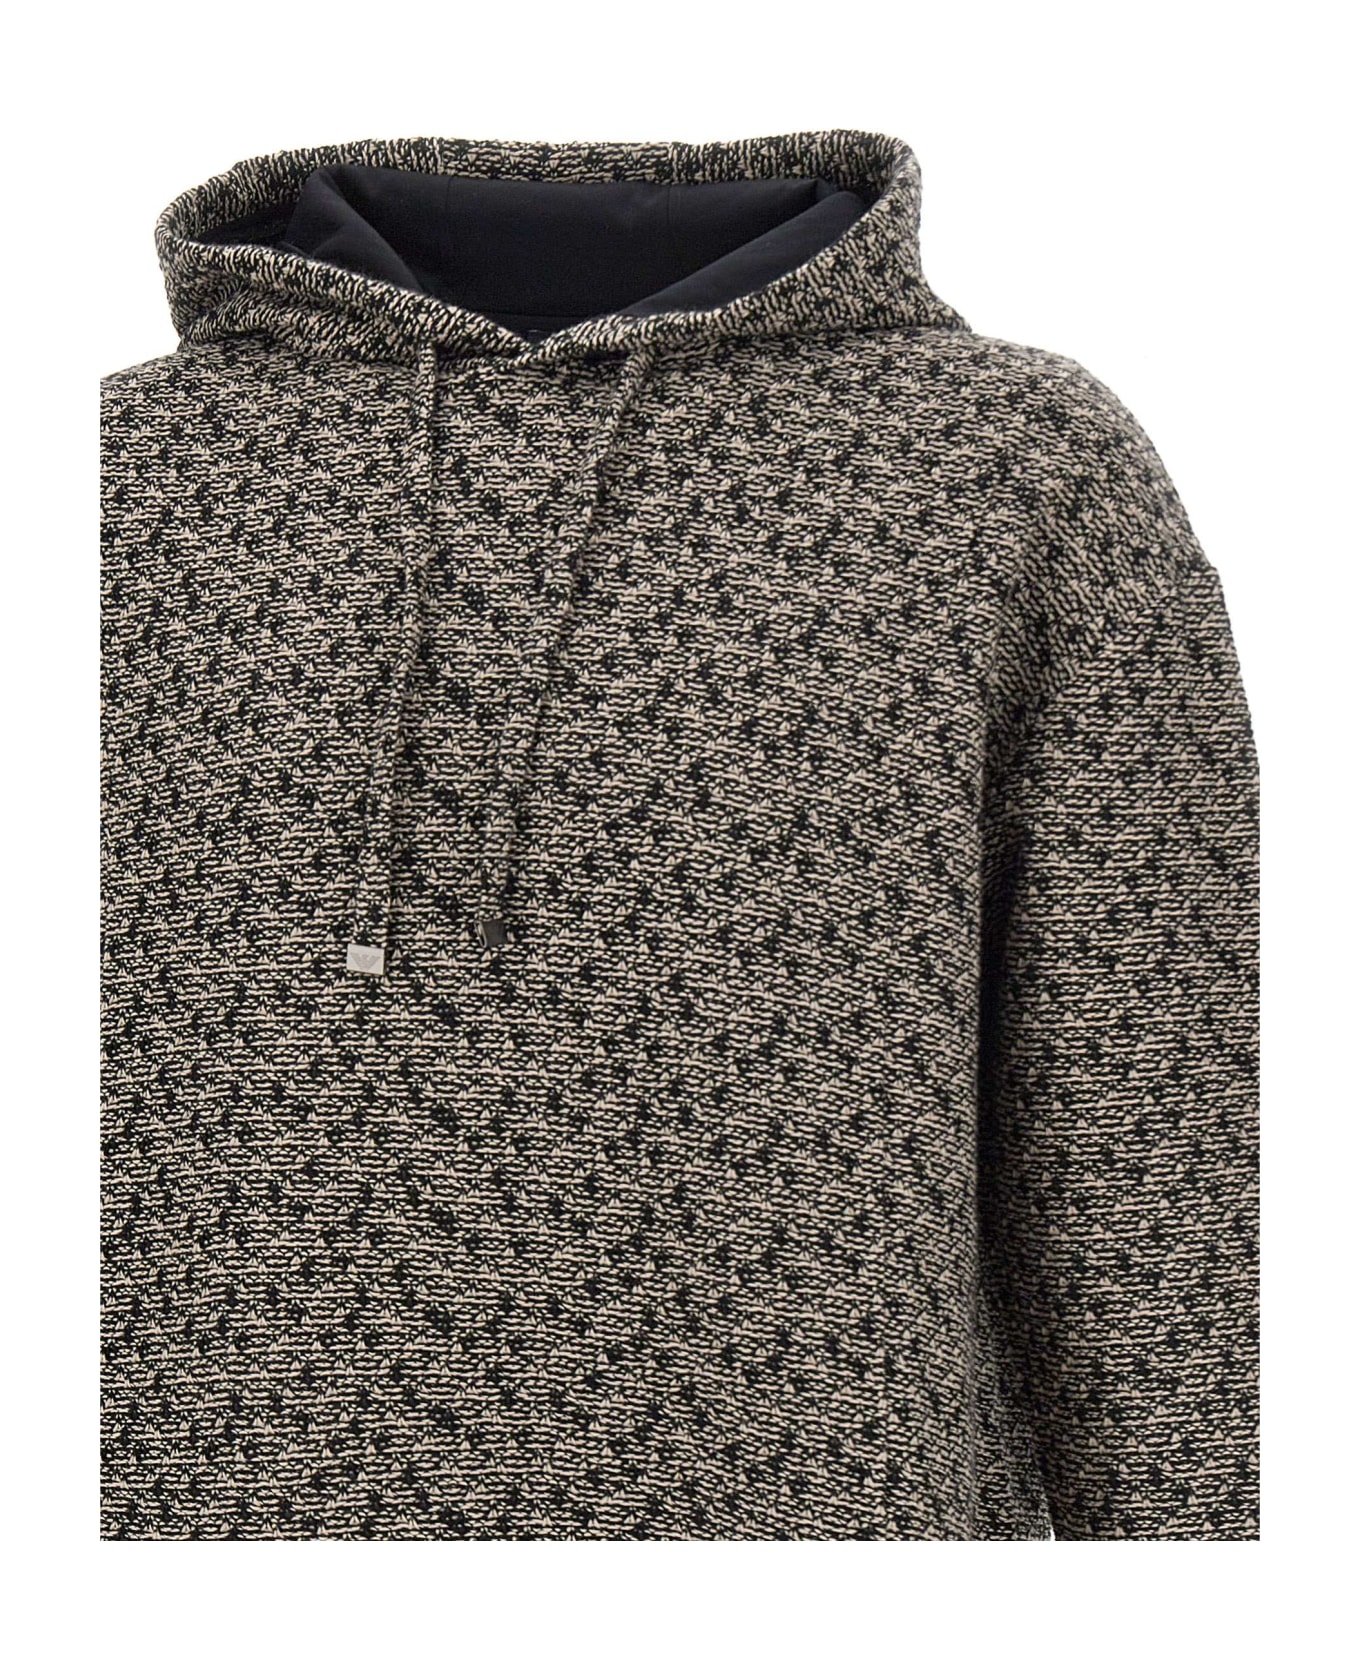 Emporio Armani Cotton Sweatshirt - BEIGE フリース